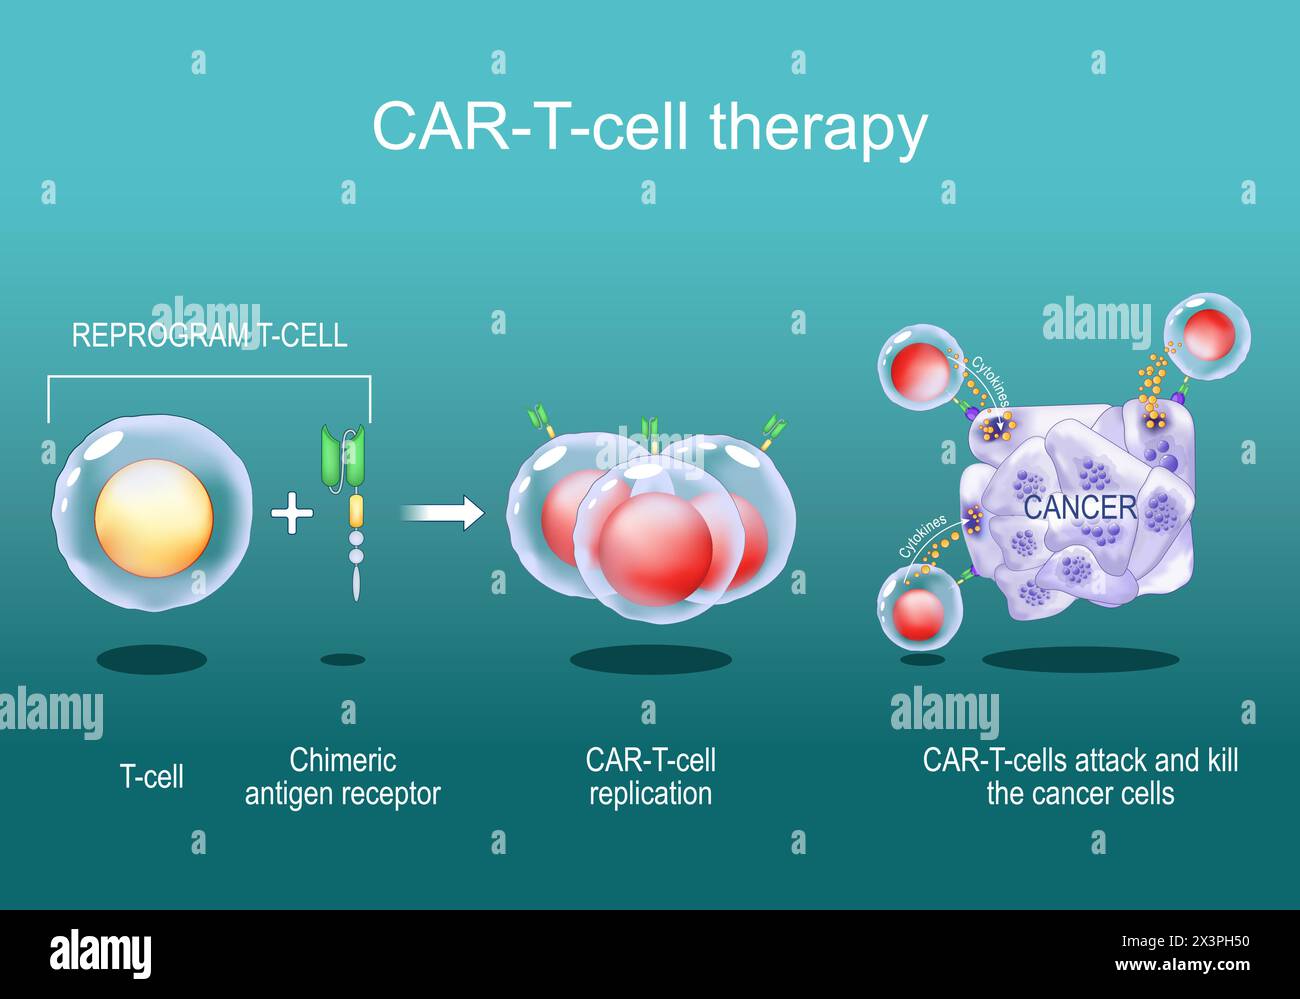 CAR T-thérapie. immunothérapie anticancéreuse. destruction des cellules tumorales. génétiquement modifié. Médecine personnalisée. Affiche vectorielle. Illustr. Plate isométrique Illustration de Vecteur